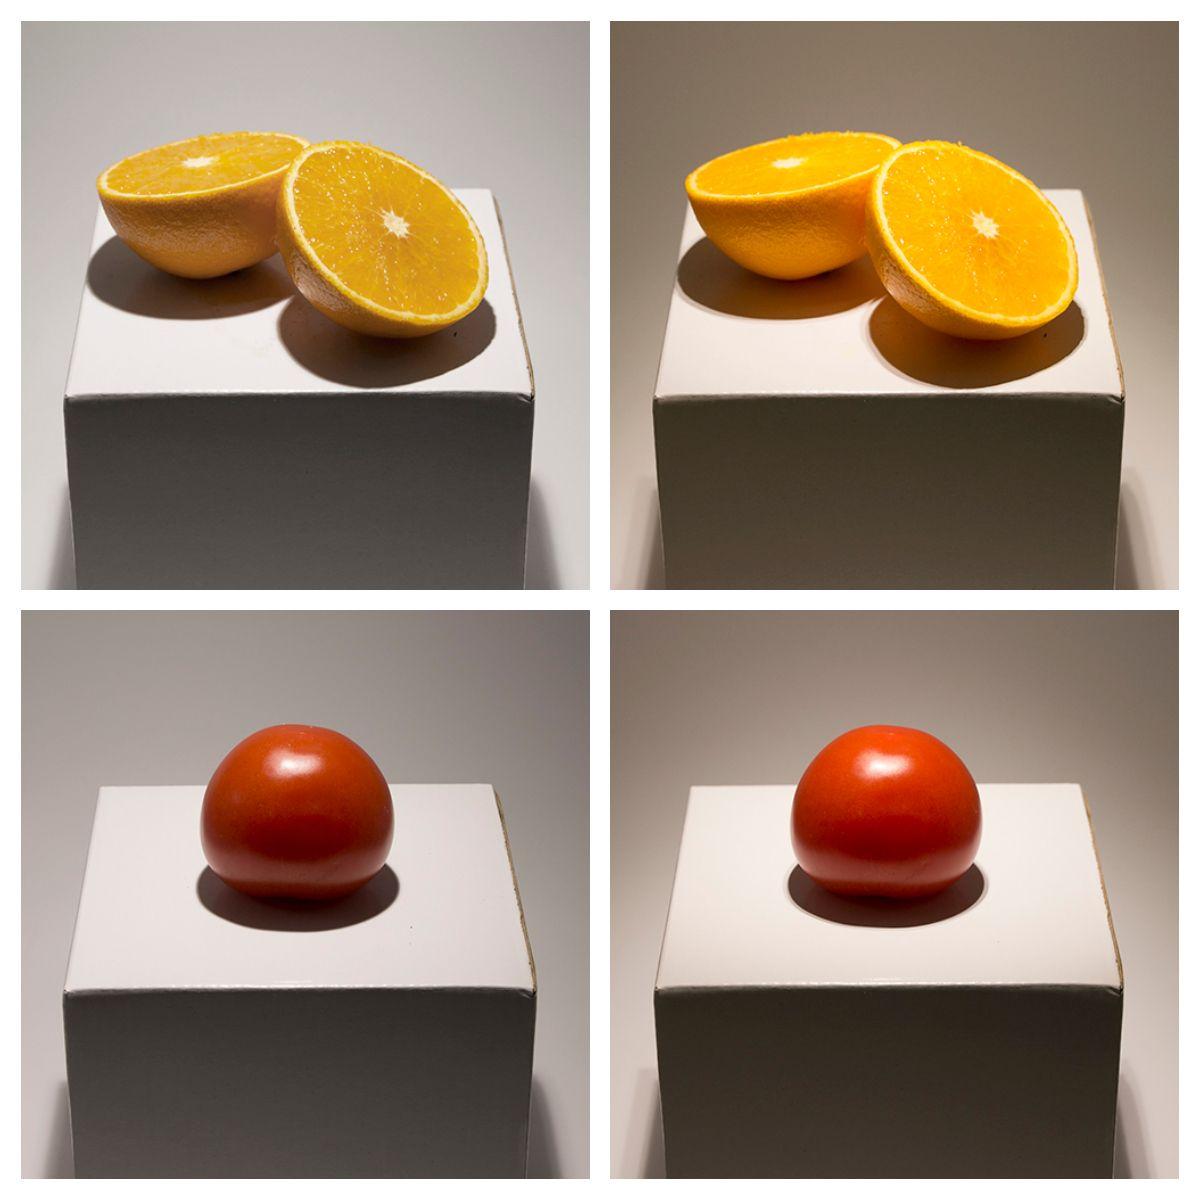 KUVA 3: Appelsiini ja tomaatti saavat oikeat sävynsä, kun niitä valaistaan korkean värintoiston led-lampulla. Vasemmanpuoleisissa kuvissa CRI on 80 ja oikeanpuoleisissa kuvissa CRI on 98. Kuvia ei ole käsitelty.